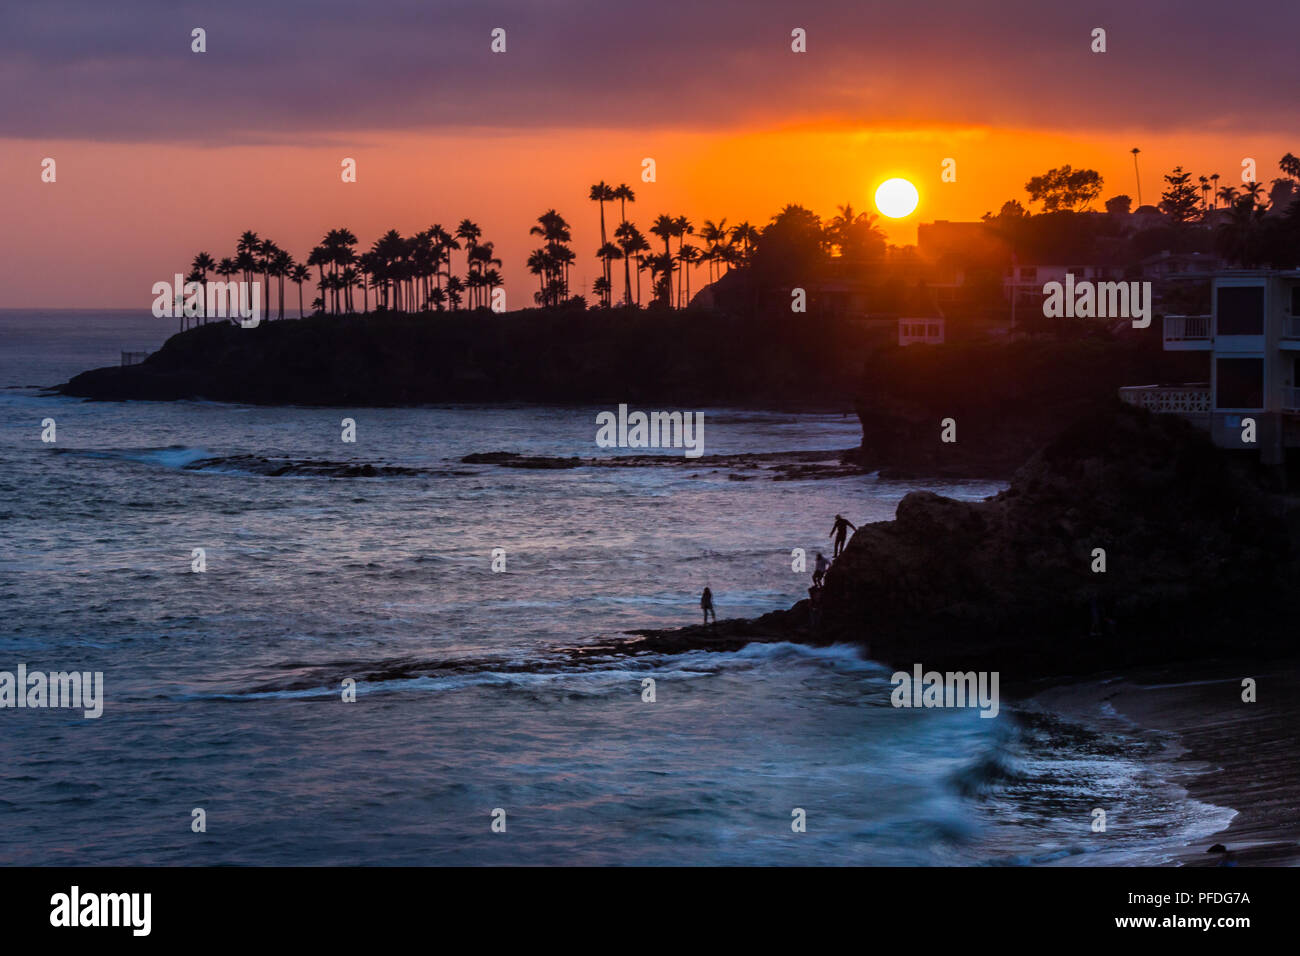 Belle vue sur la côte d'un ciel coloré au coucher du soleil avec des vagues se briser dans des formations rocheuses et silhouette de palmiers, les plongeurs Cove, Laguna Beach, C Banque D'Images